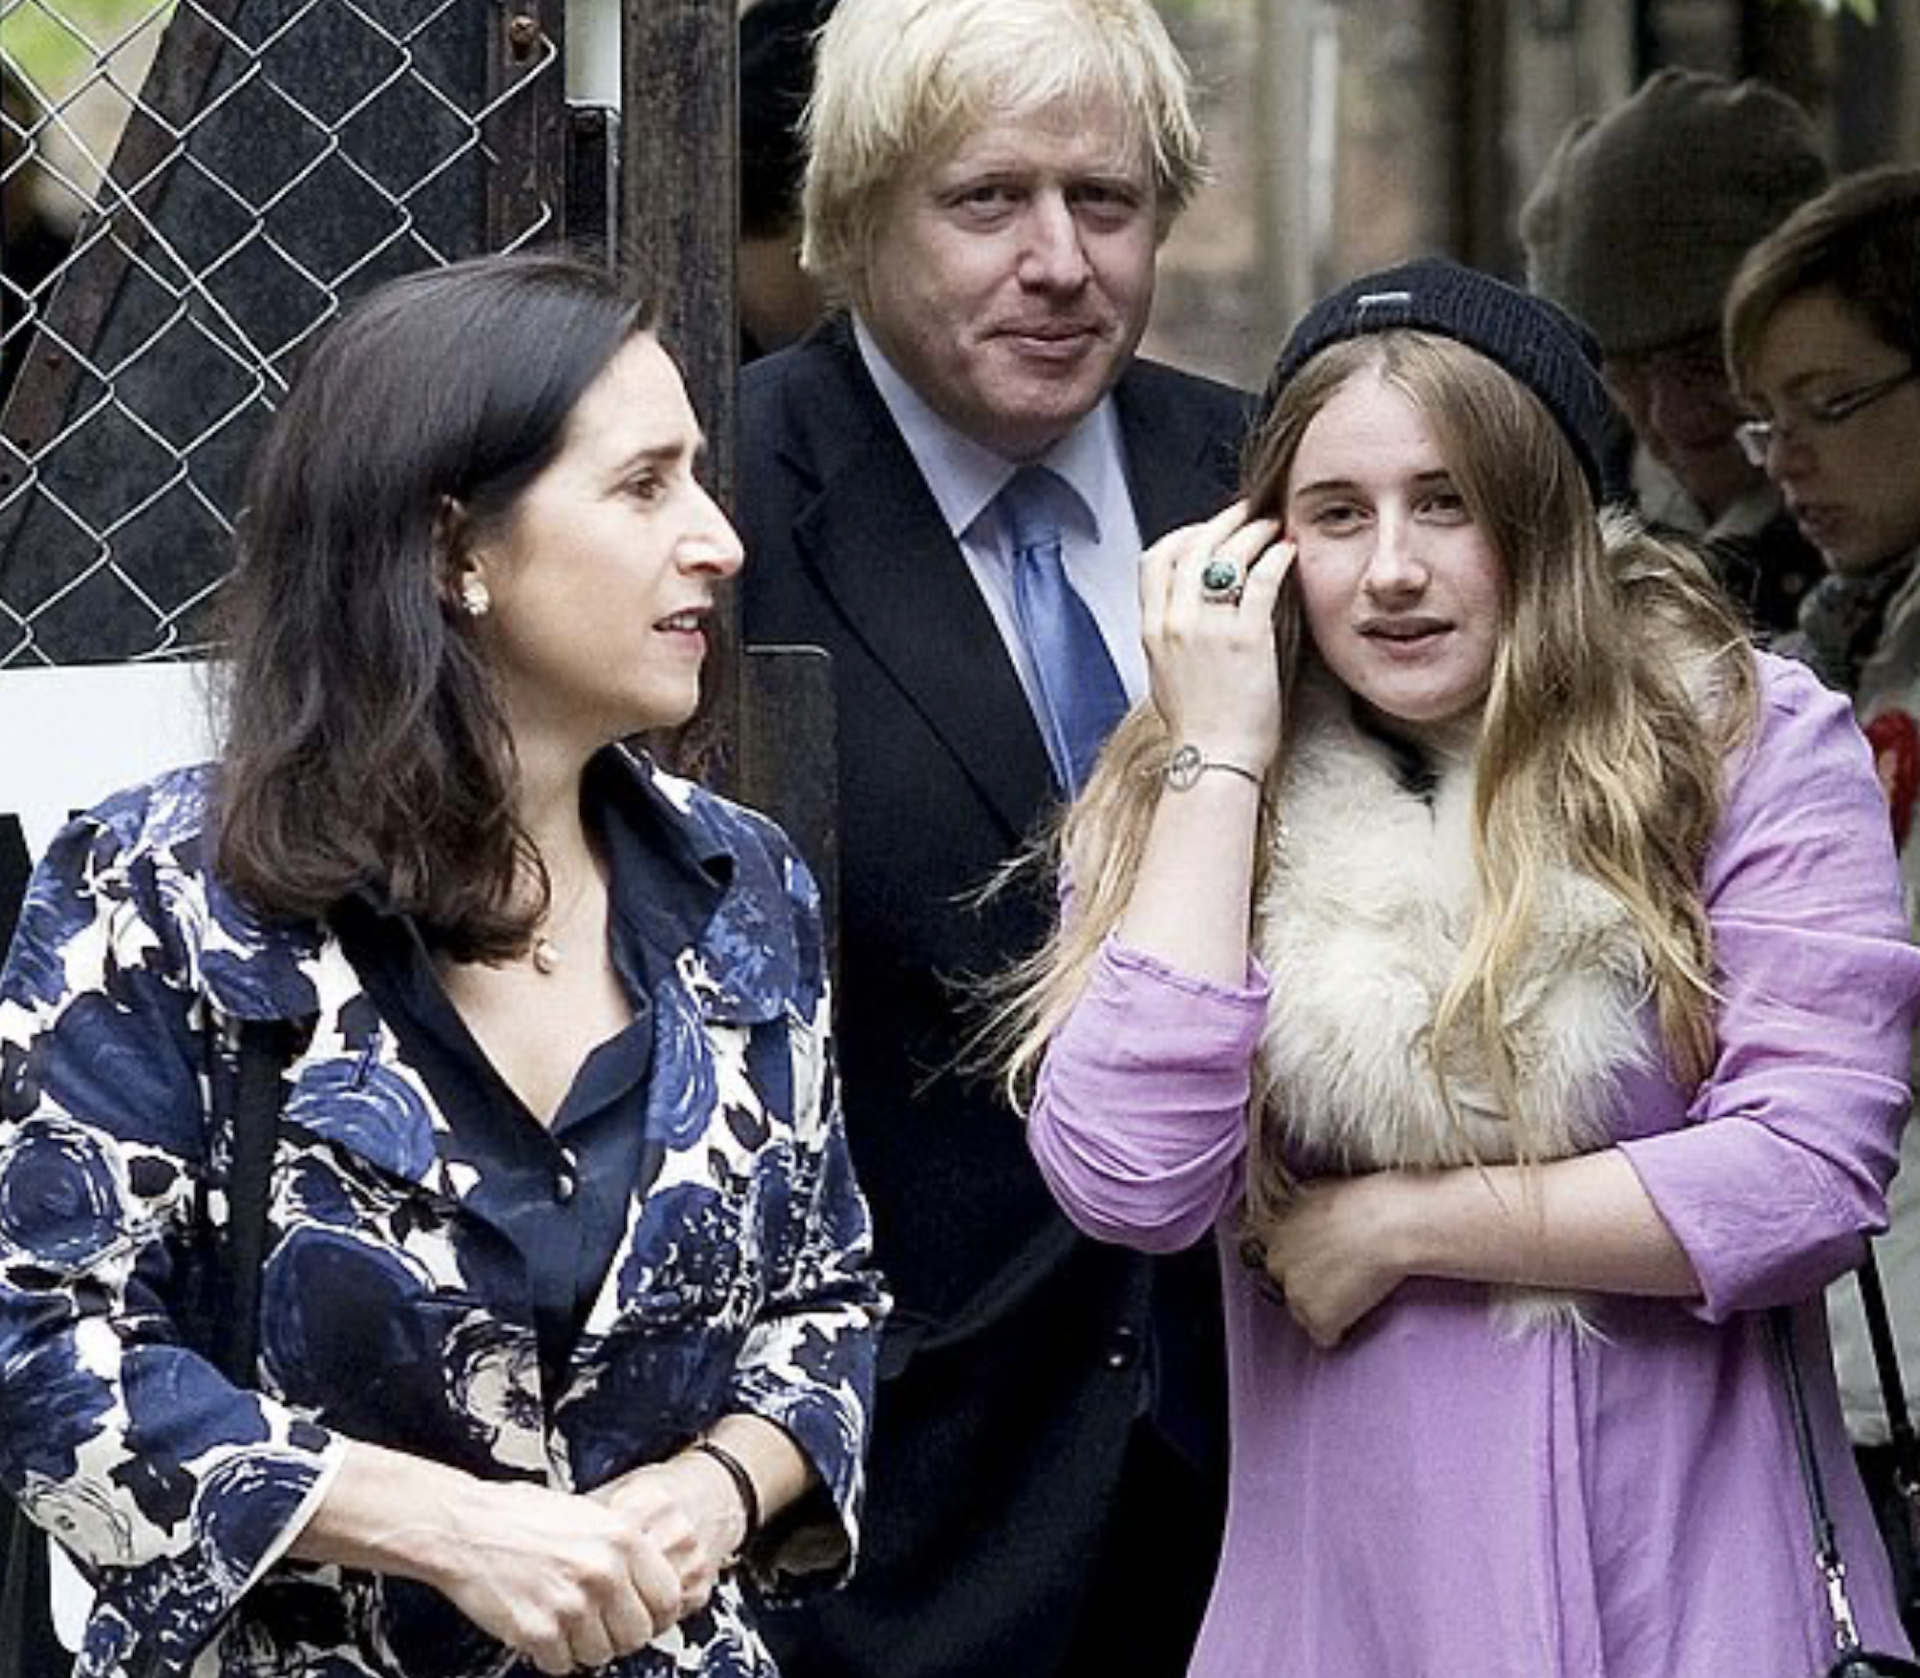 Fiica premierului Boris Johnson e model de succes, chiar dacă are zeci de kilograme în plus